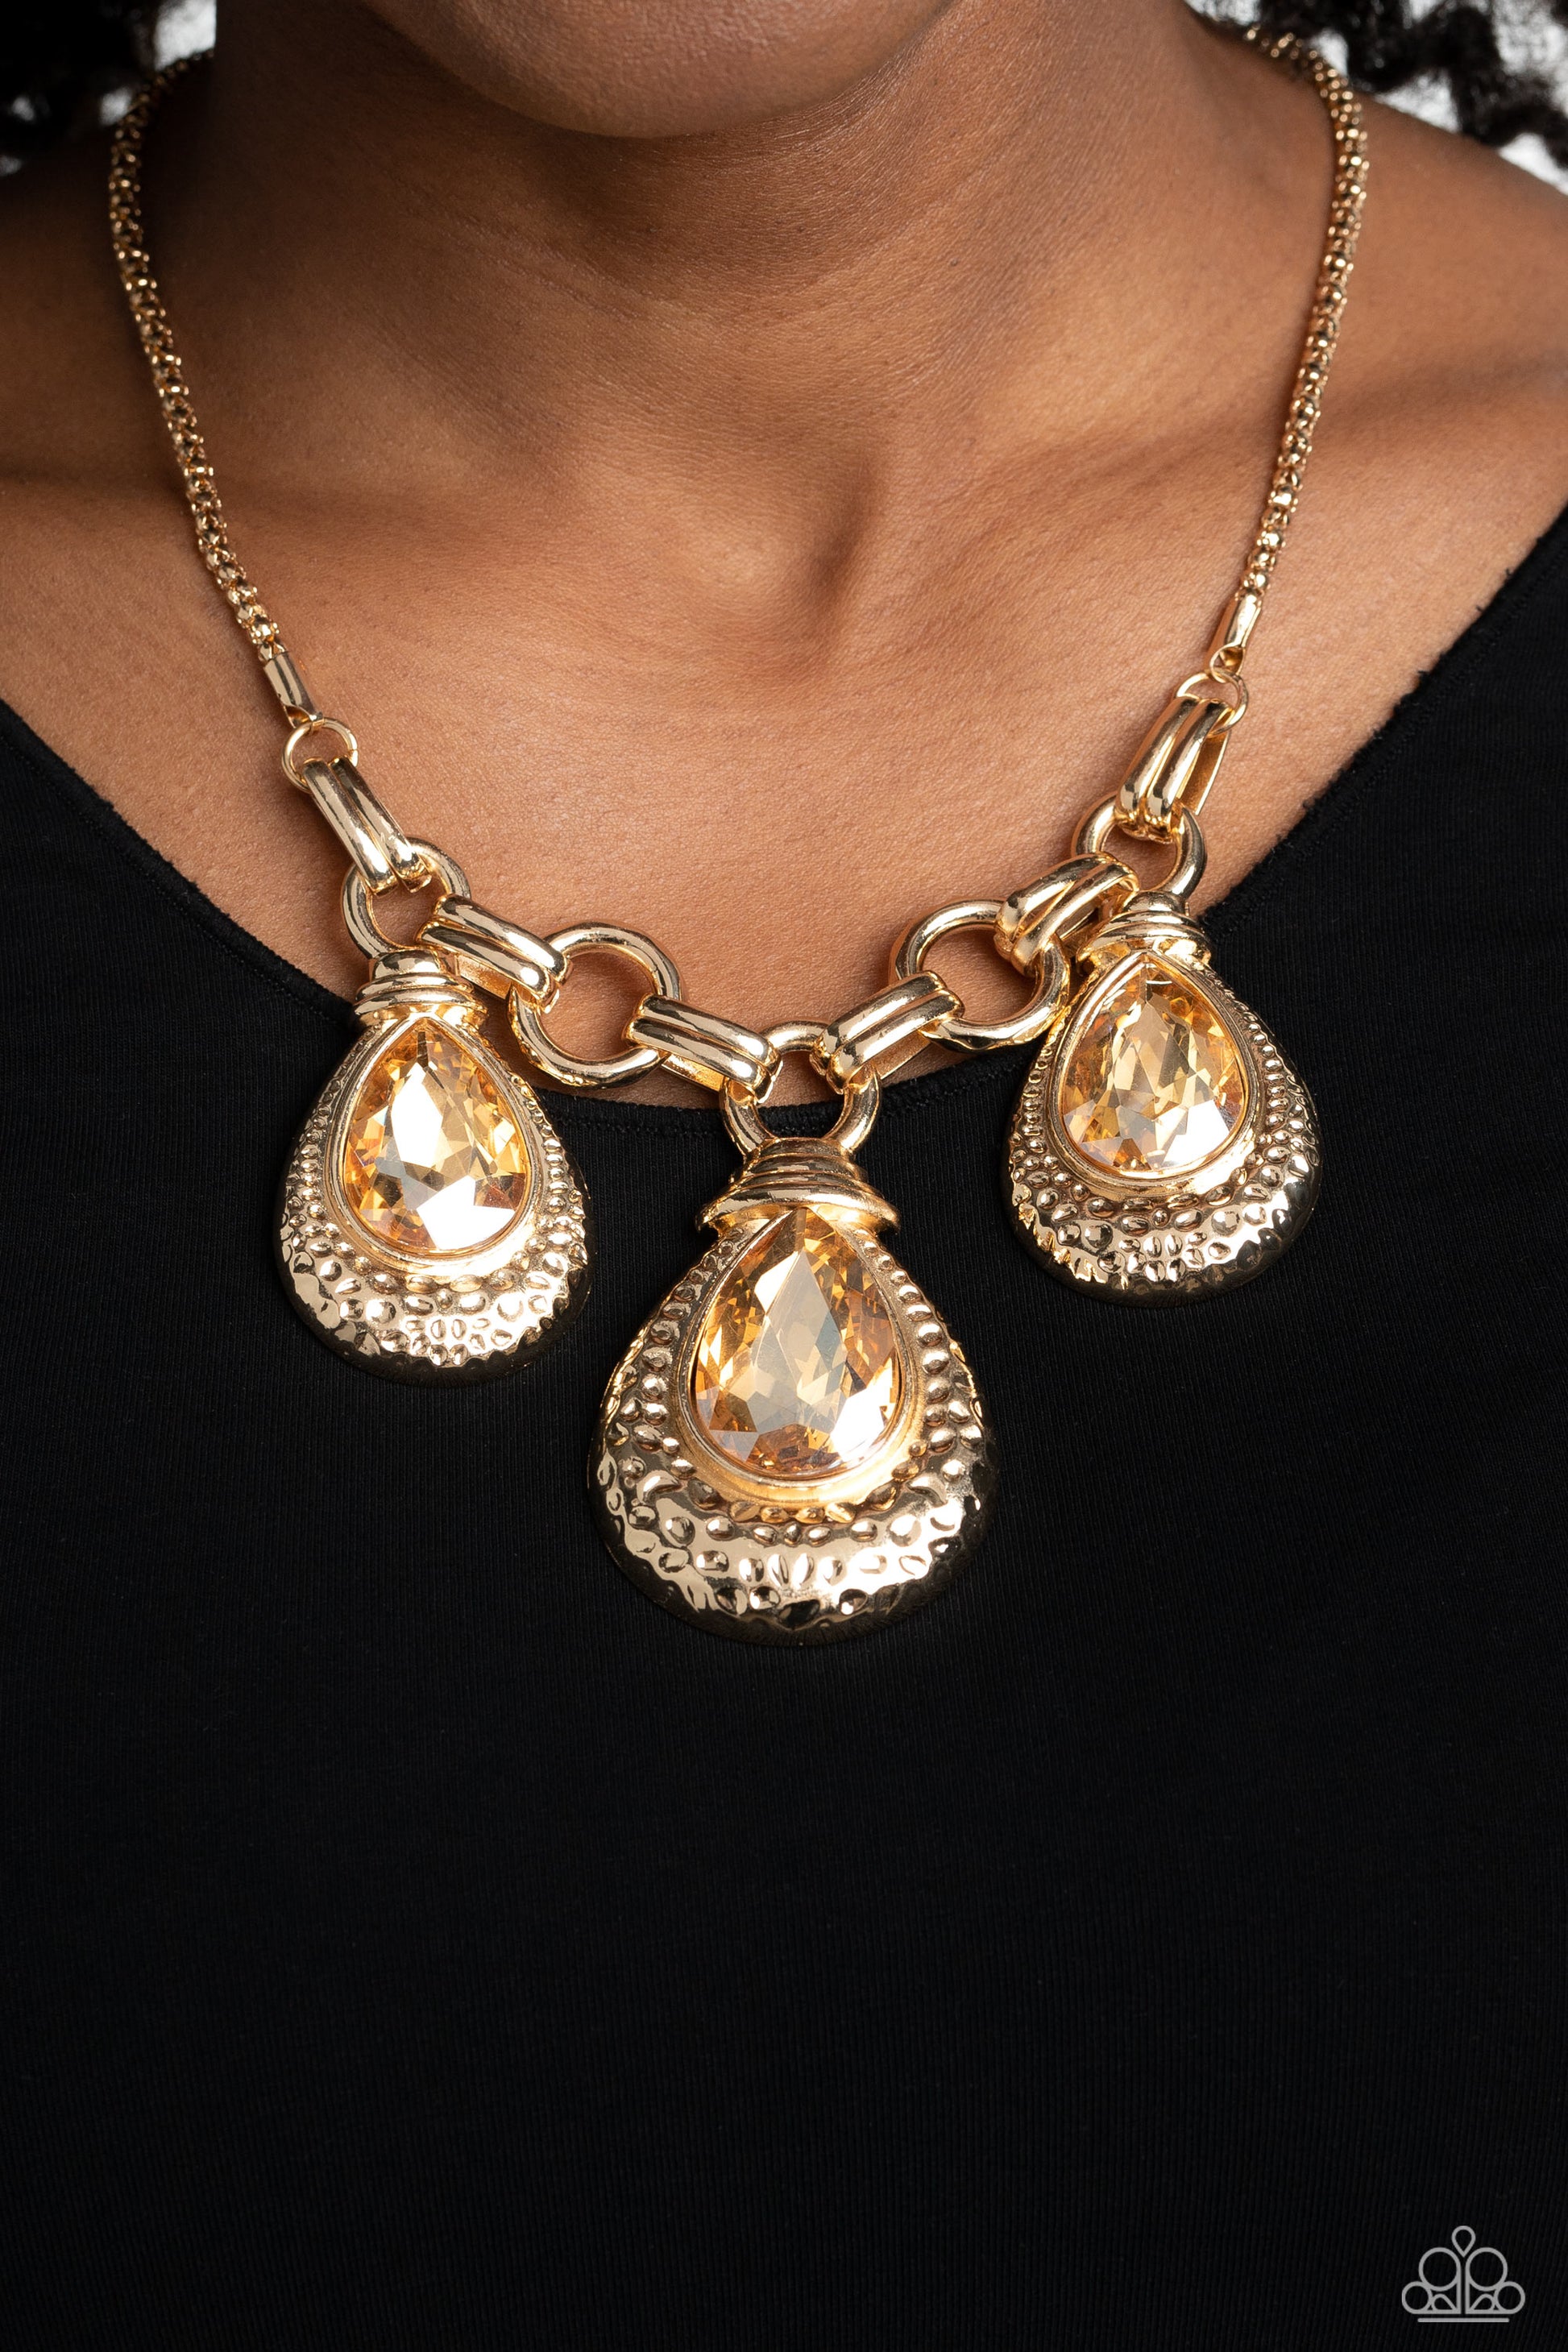 Built Beacon Gold Necklace & Bracelet Set - Paparazzi Accessories